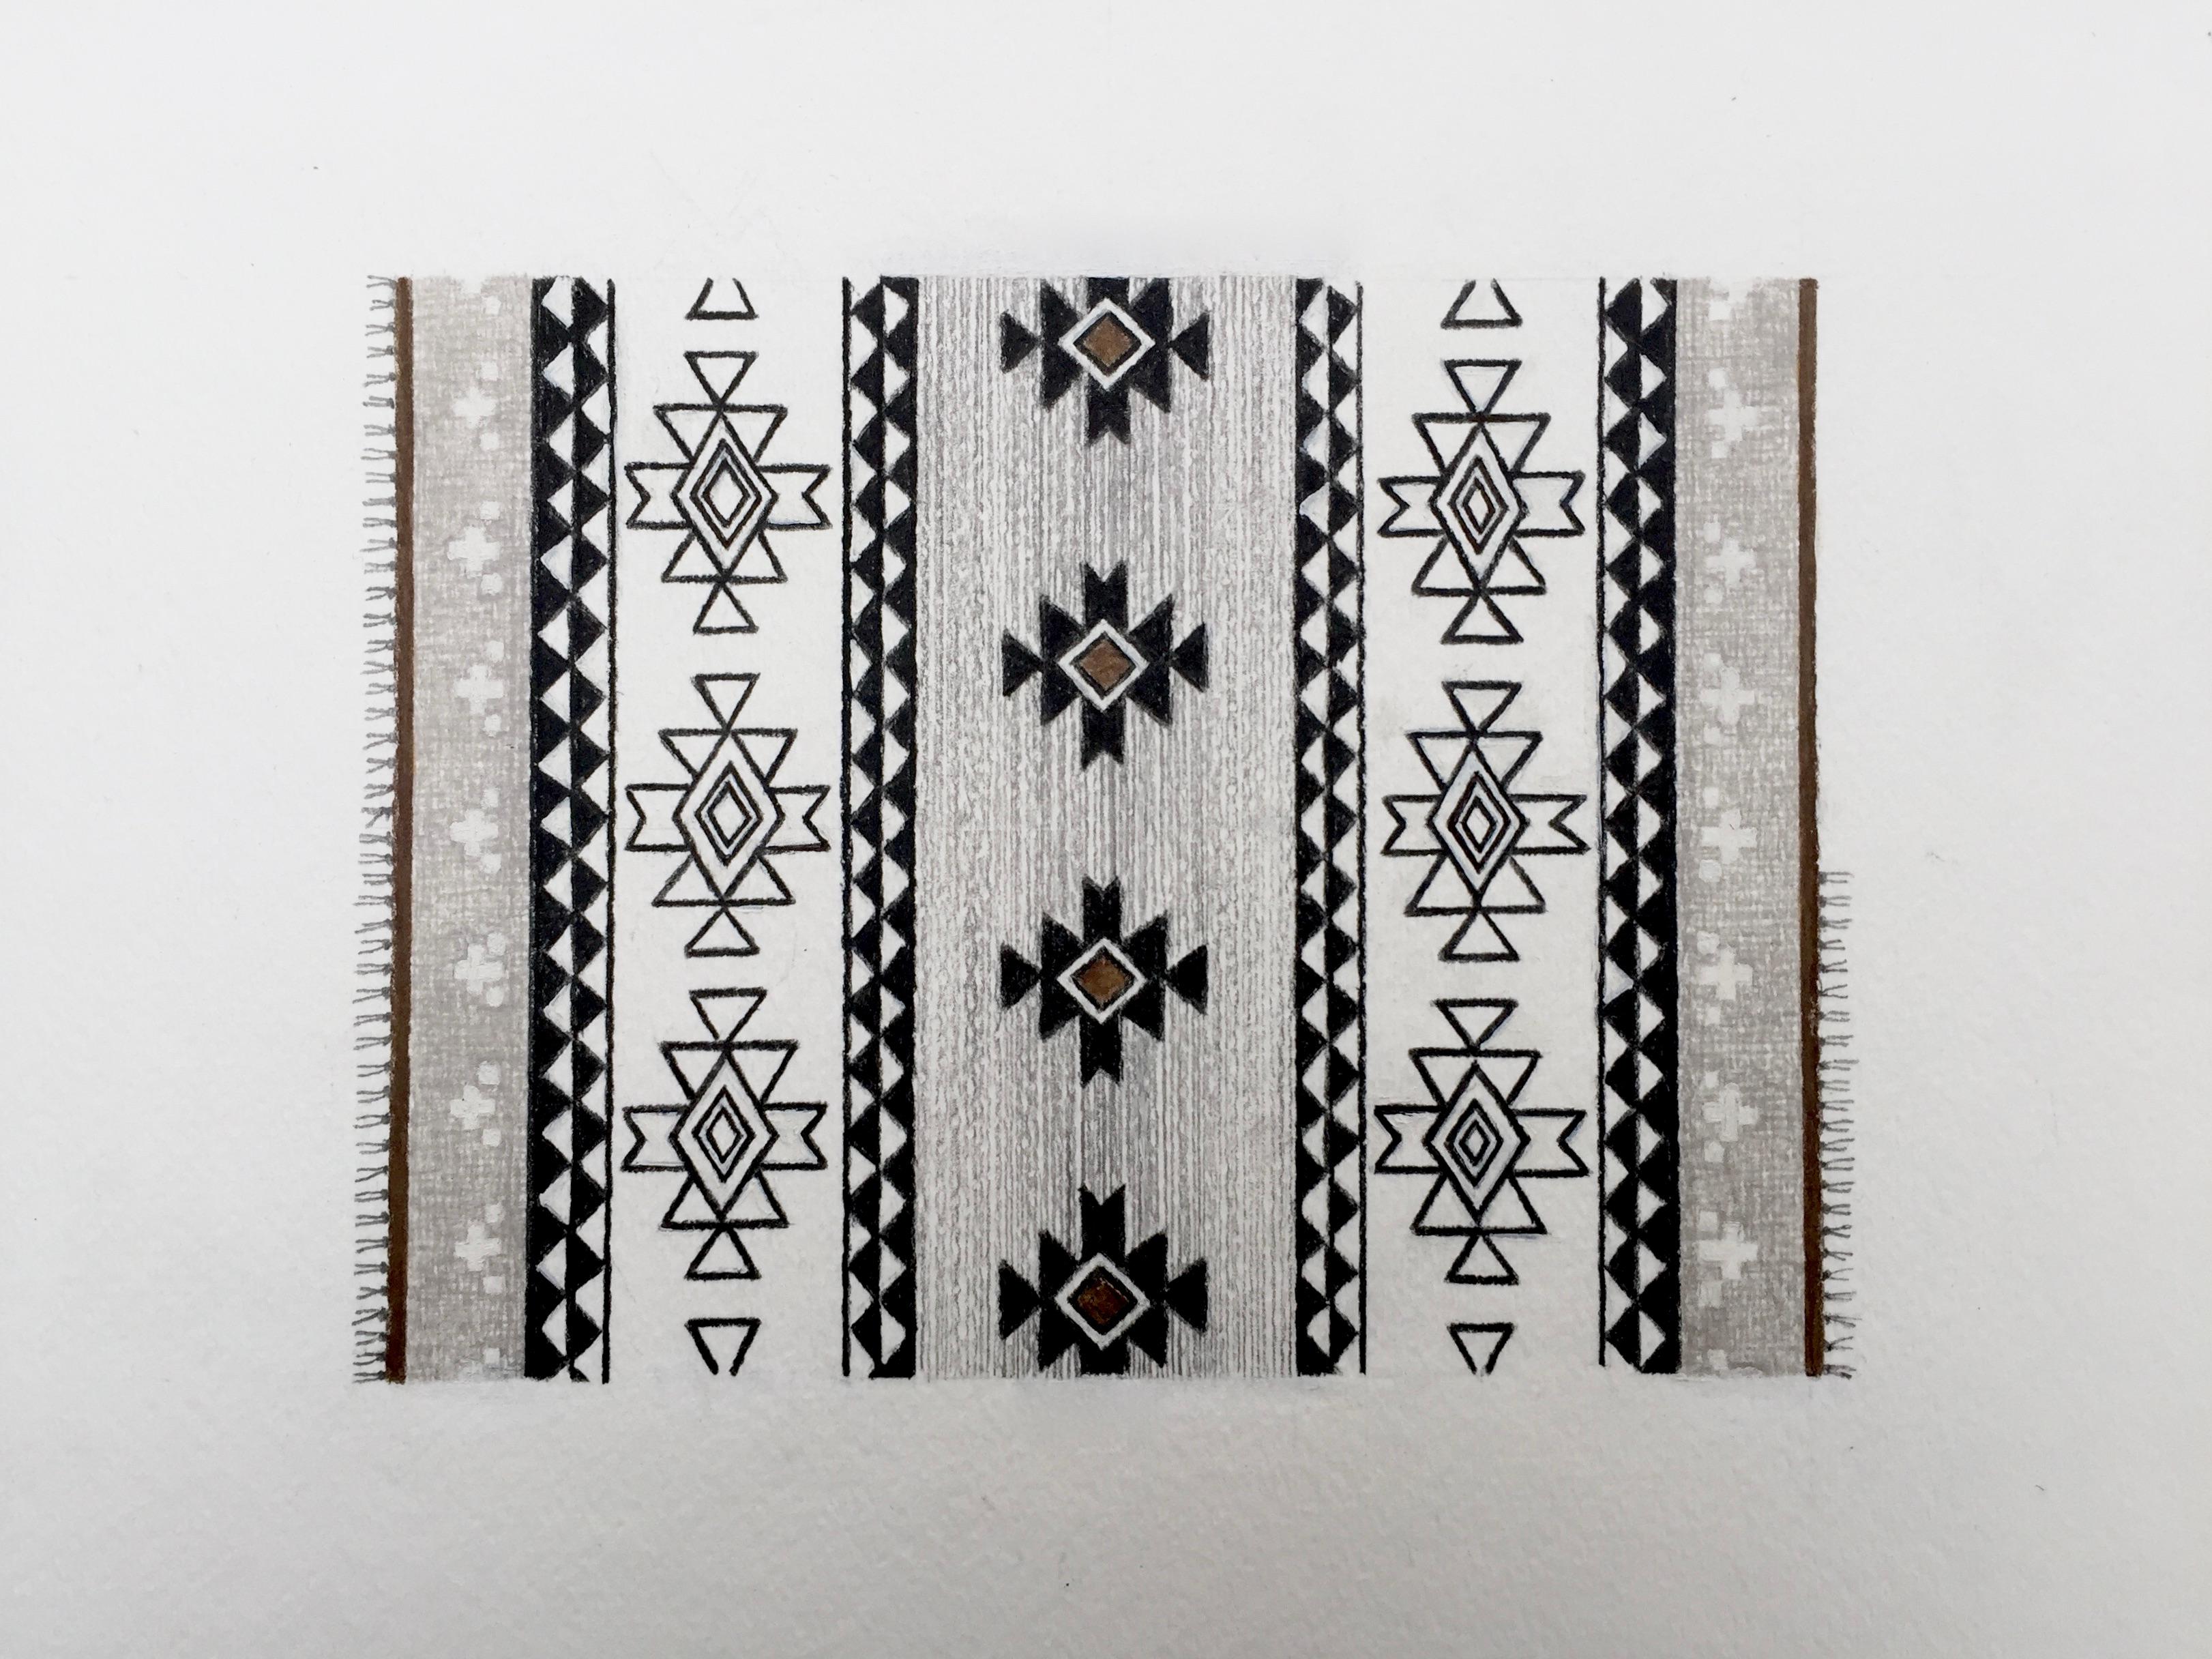 Cette œuvre d'art détaillée sur papier met l'accent sur le design et la composition. Un motif de tapis d'inspiration Navajo est créé à partir d'éléments de design traditionnels avec un résultat contemporain. La symétrie et les motifs géométriques